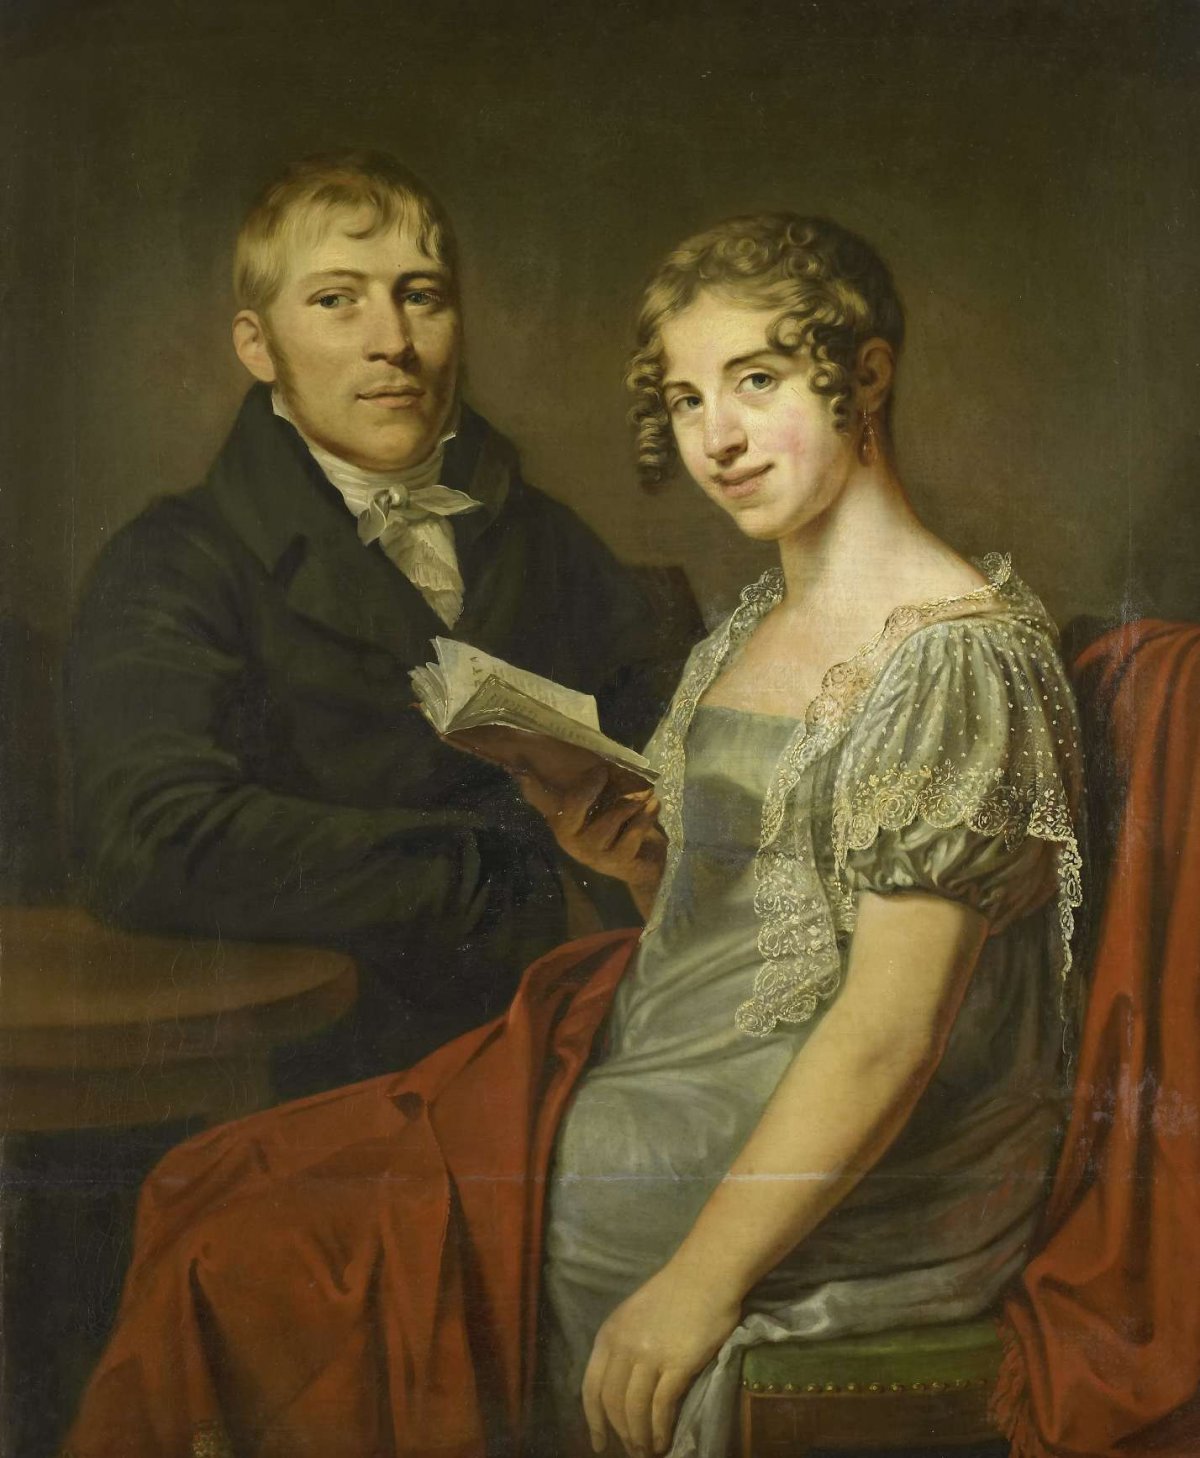 Hendrik Arend van den Brink (1783-1852) and his Wife Lucretia Johanna van de Poll (1790-1850), Louis Moritz, 1805 - 1830